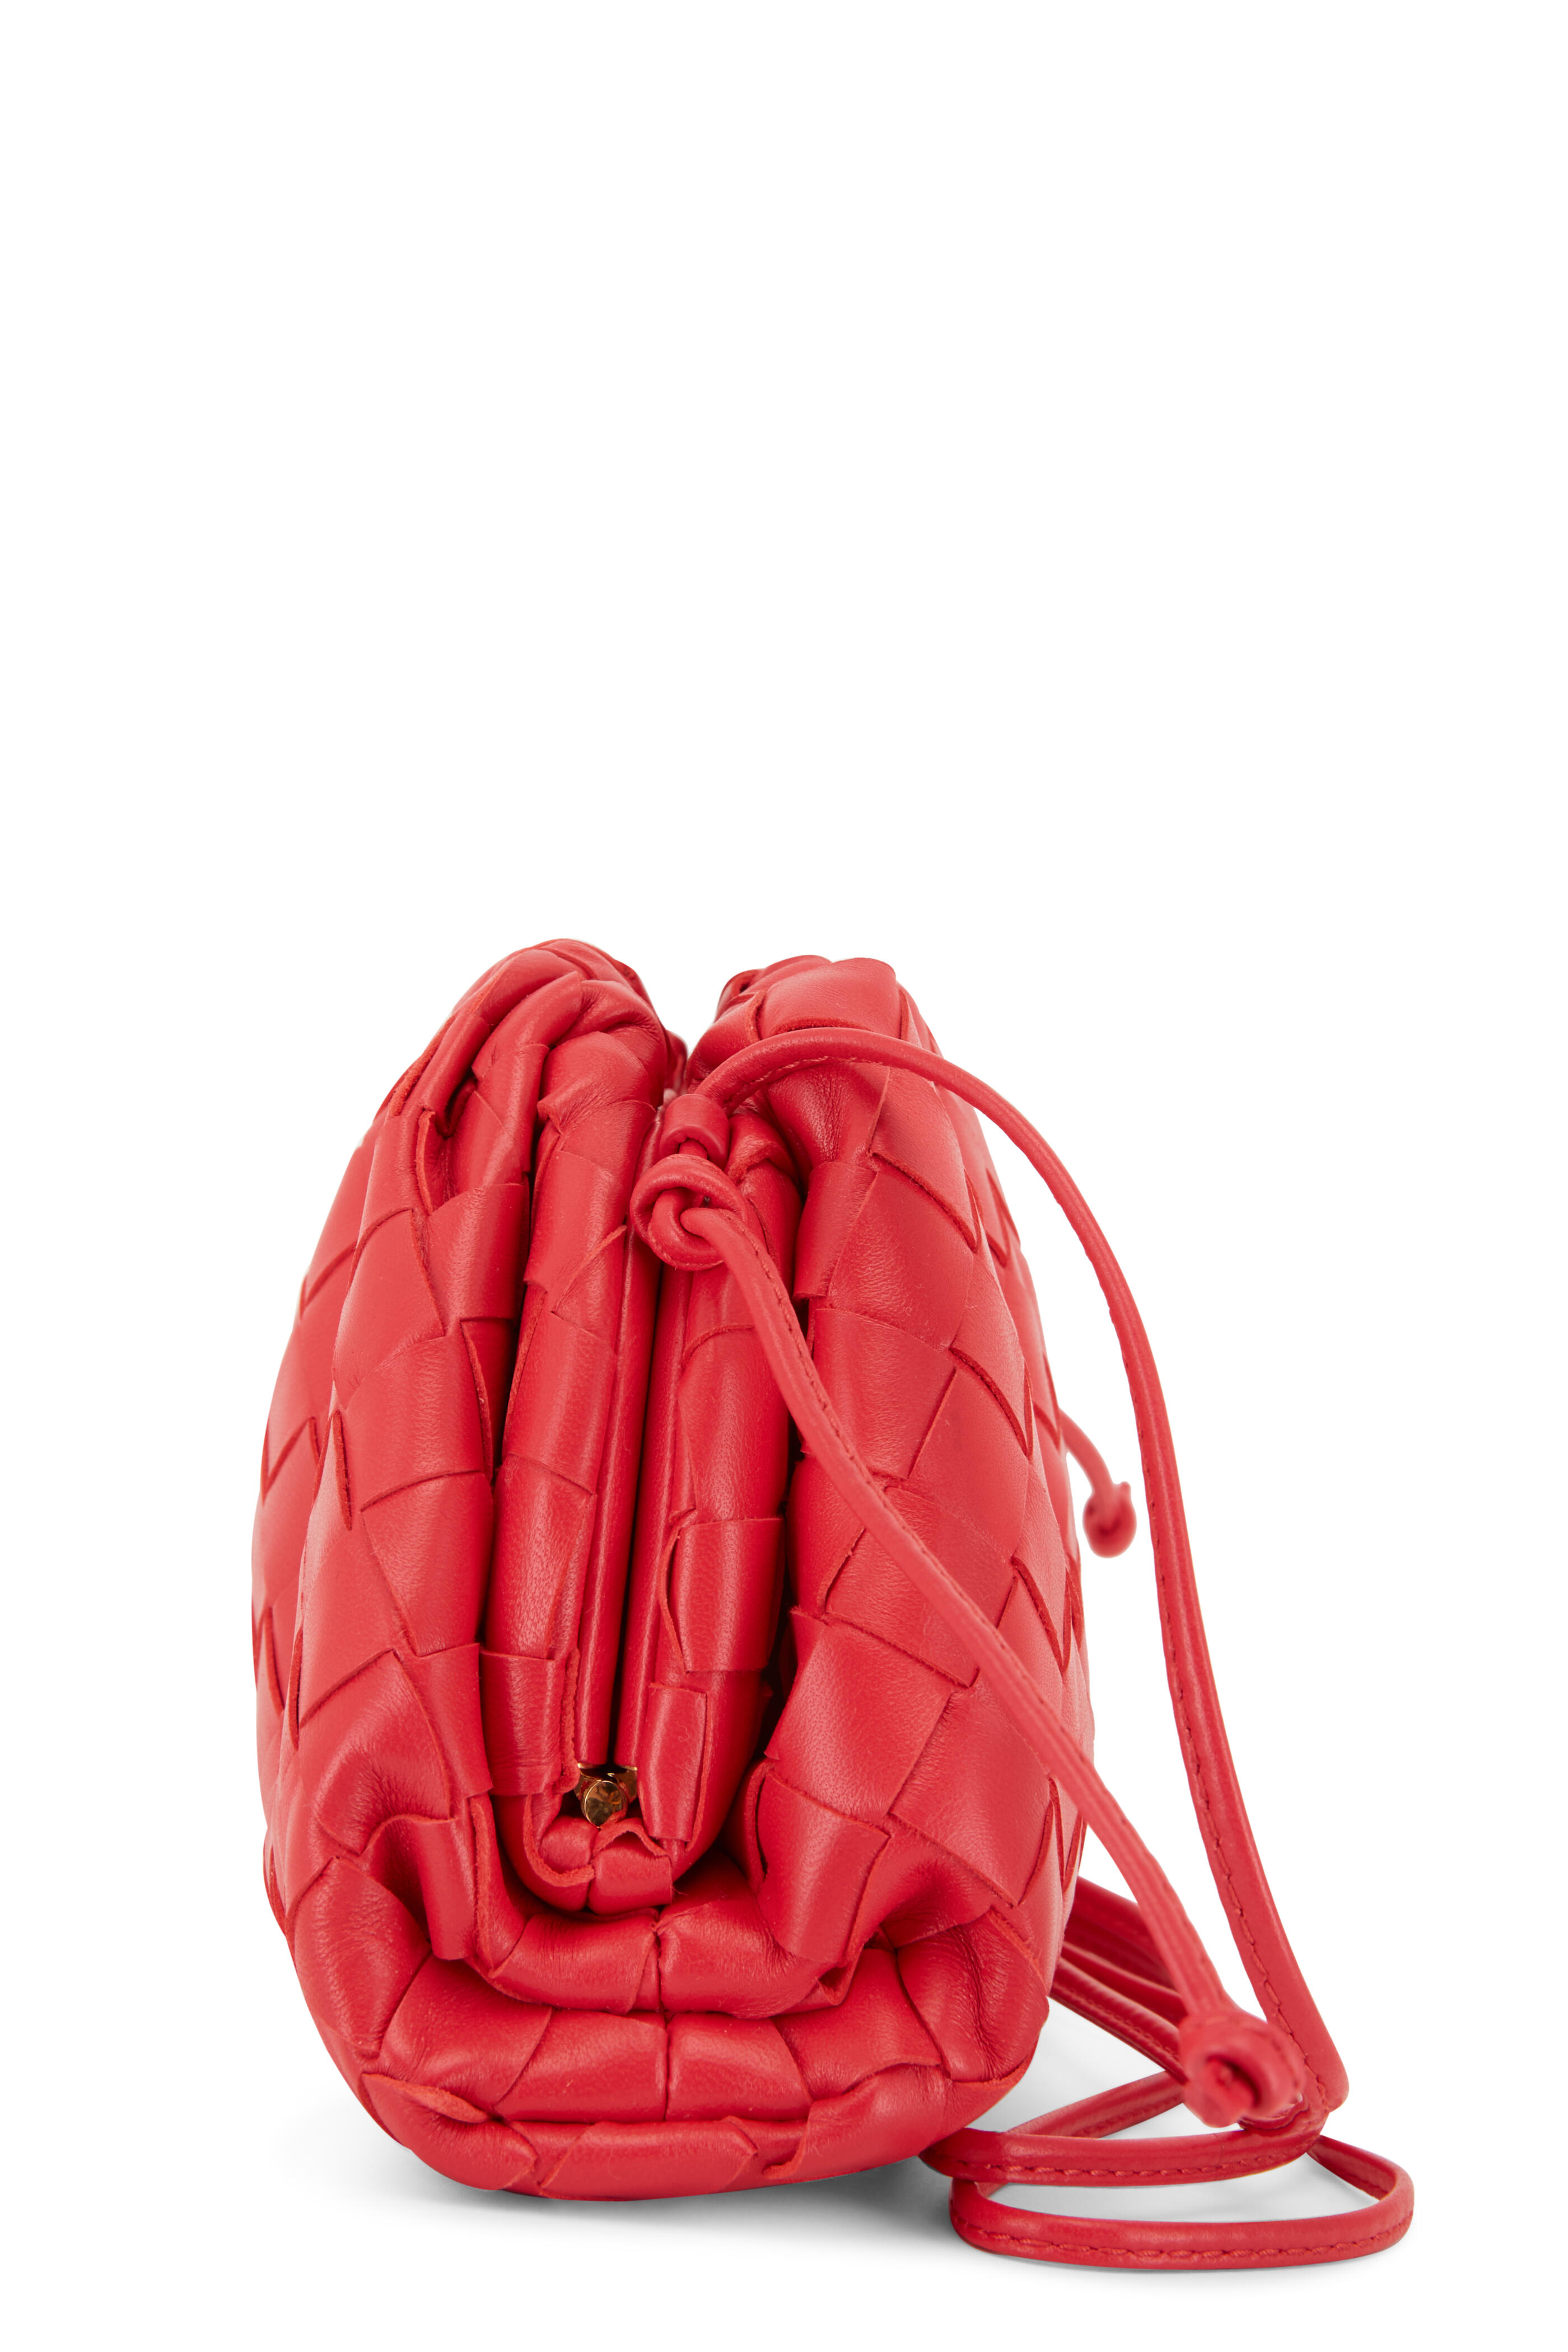 Bottega Veneta Mini Loop Camera Bag, Barolo, Women's, Handbags & Purses Crossbody Bags & Camera Bags